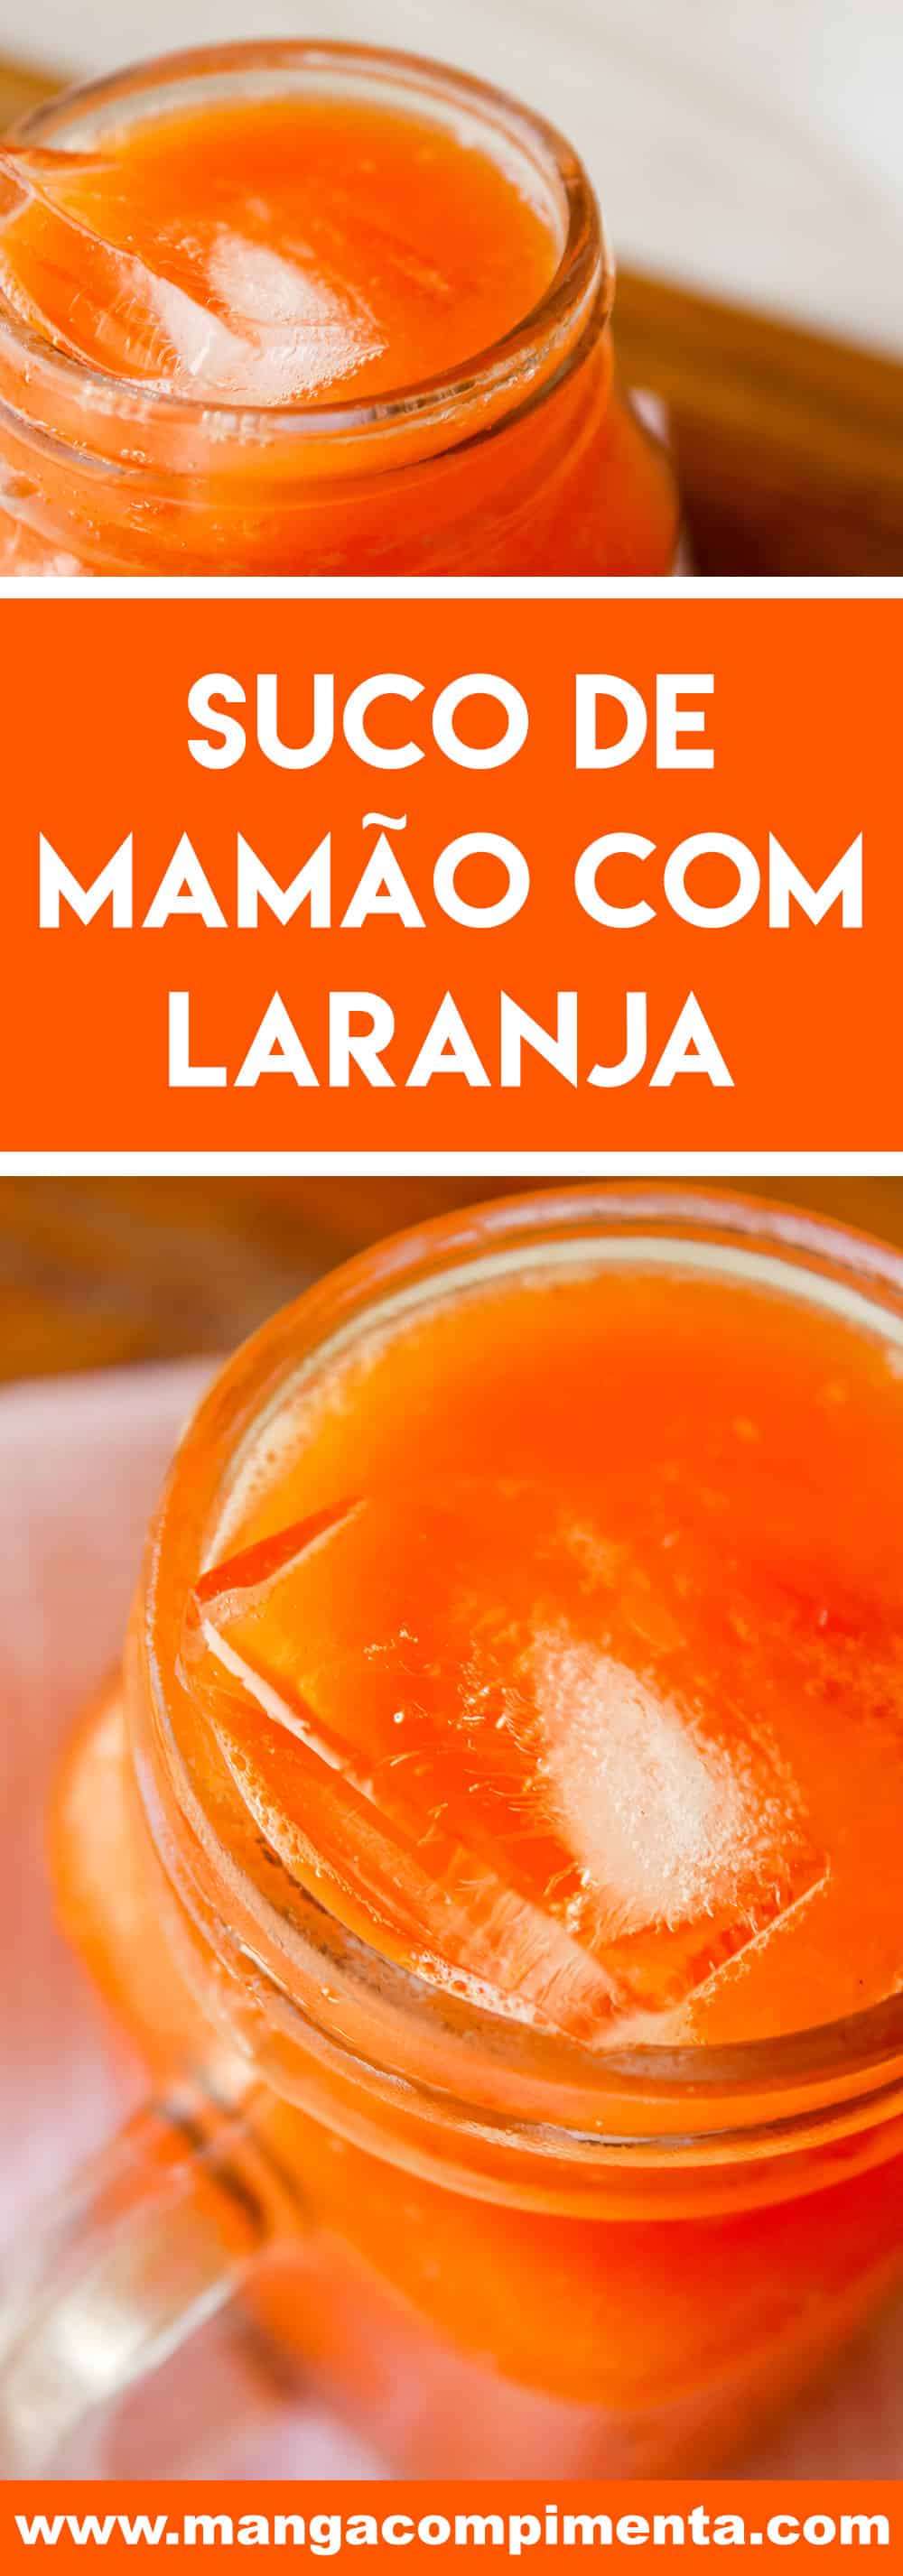 Receita de Suco de Mamão com Laranja - prepare uma bebida nutritiva e gostosa para o café da manhã.